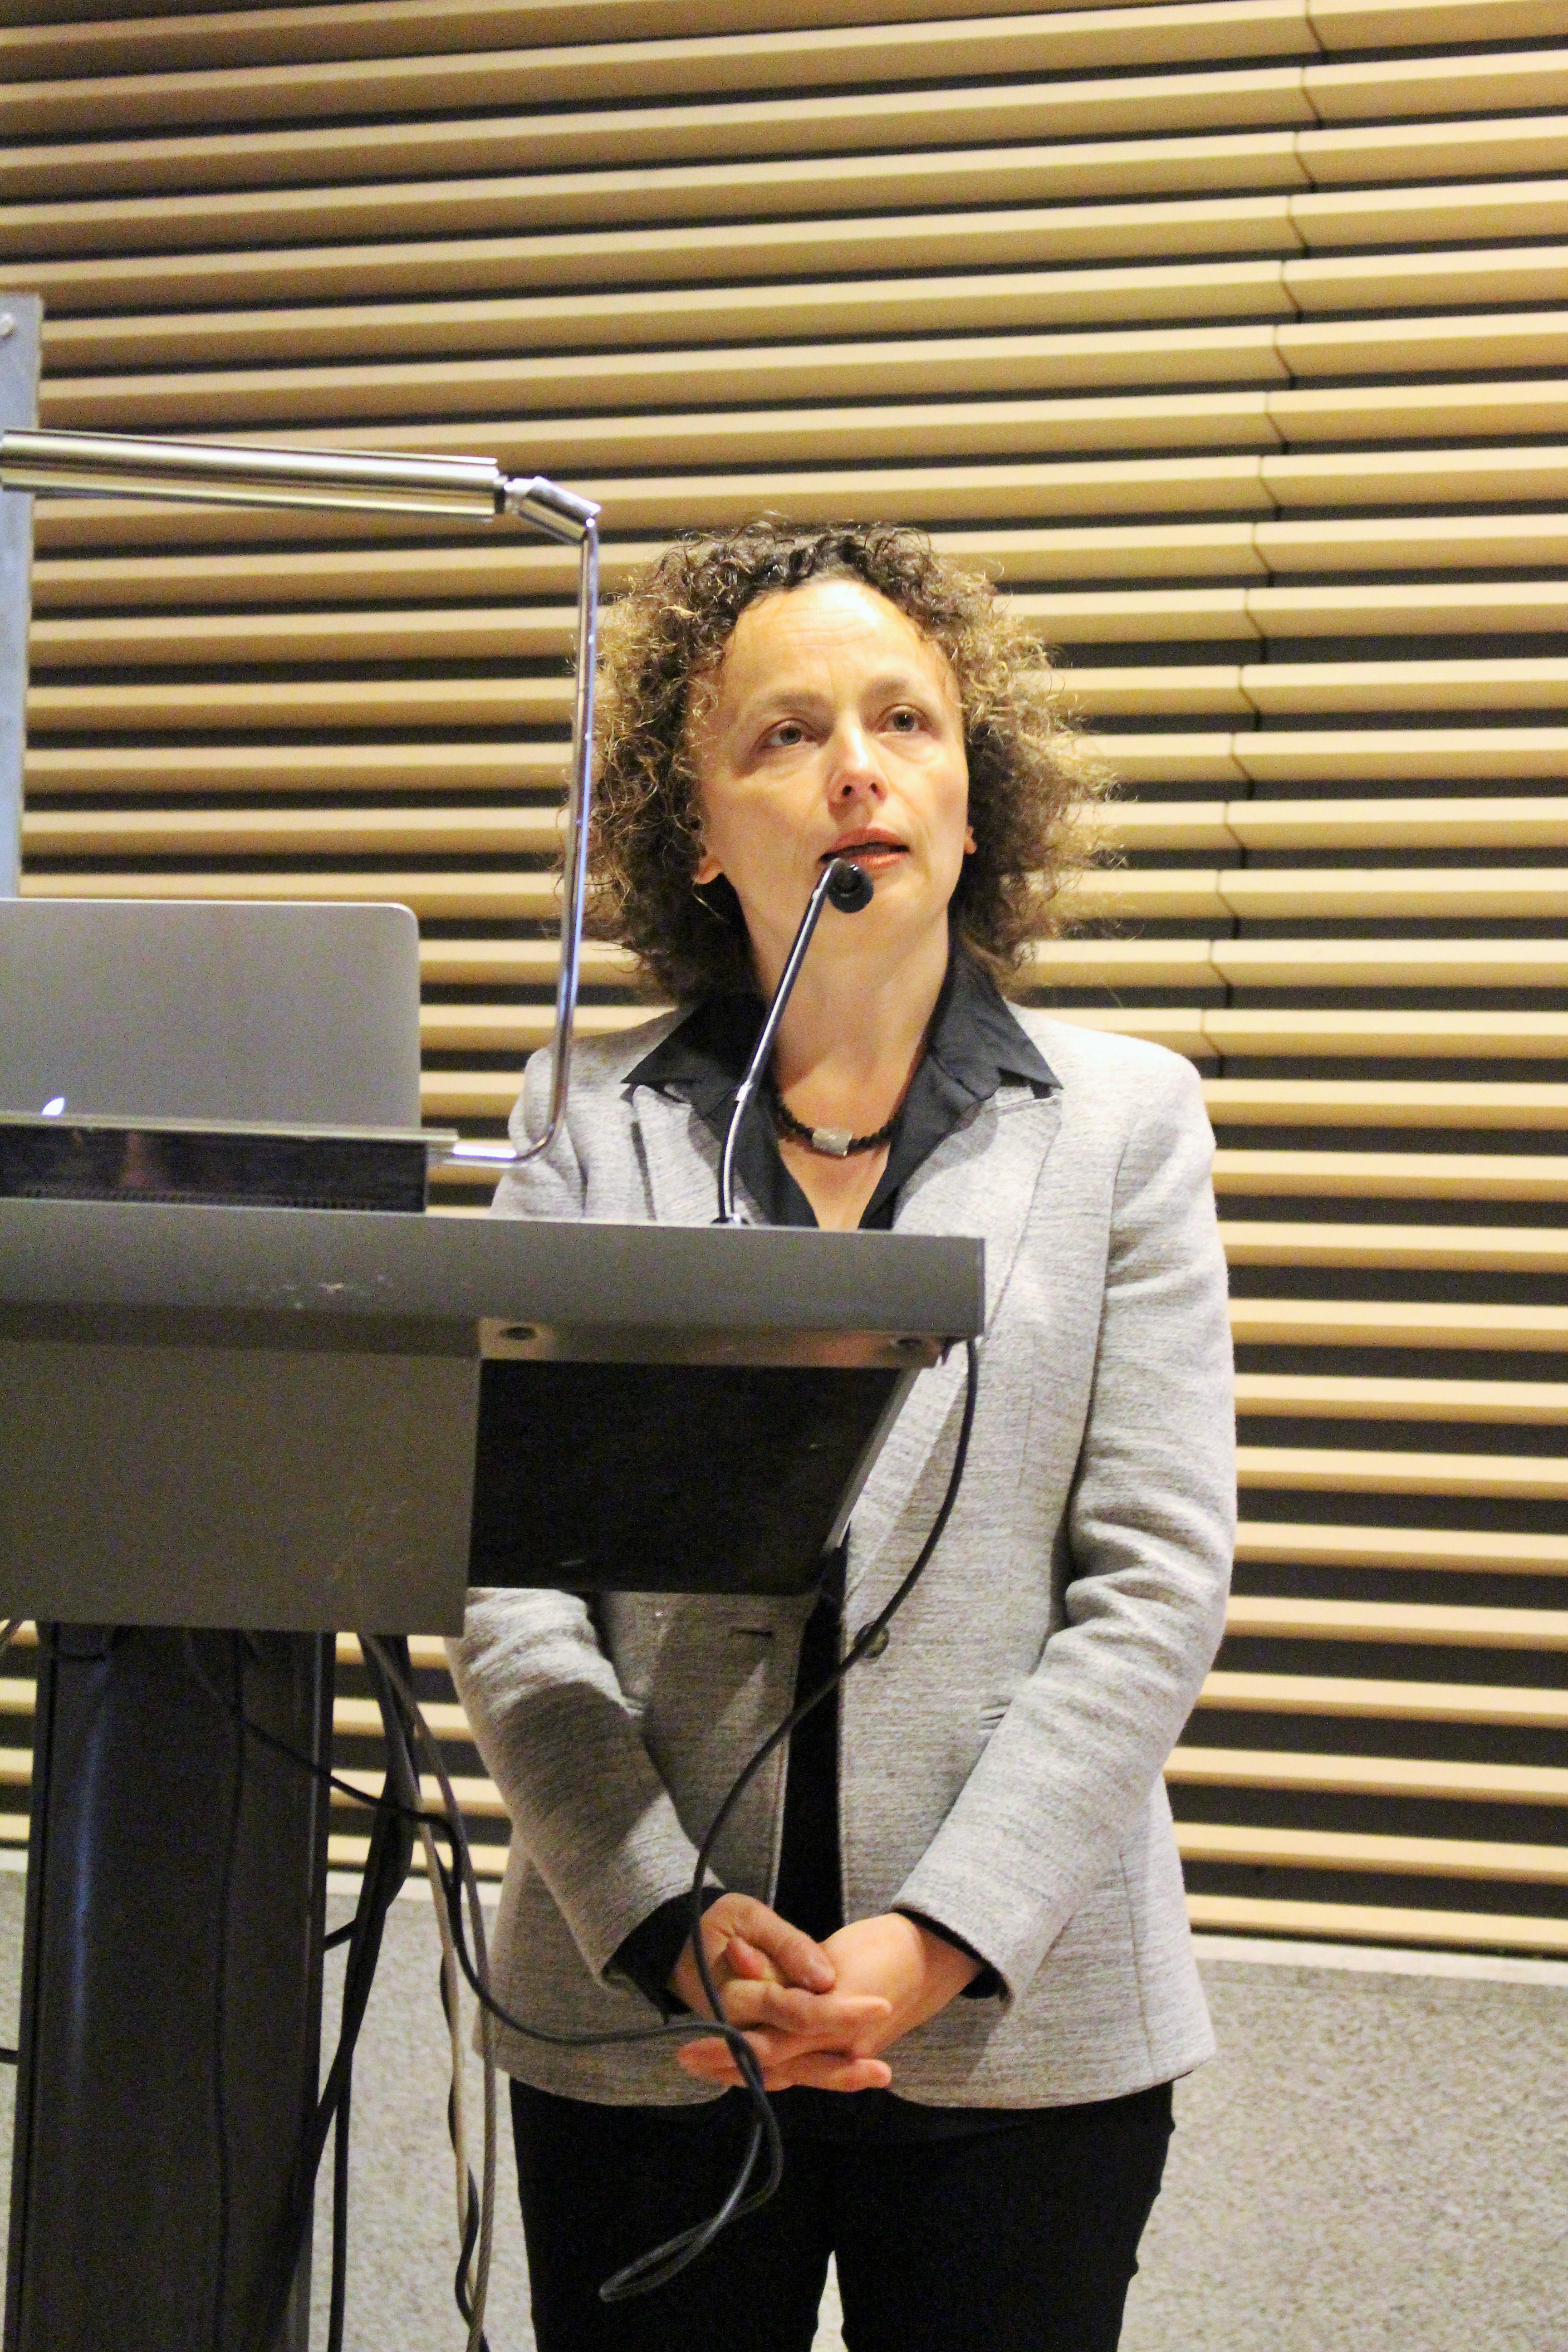 La Dra. Kathrin Winkler, directora de la DFG América Latina, saluda al público al comienzo del evento